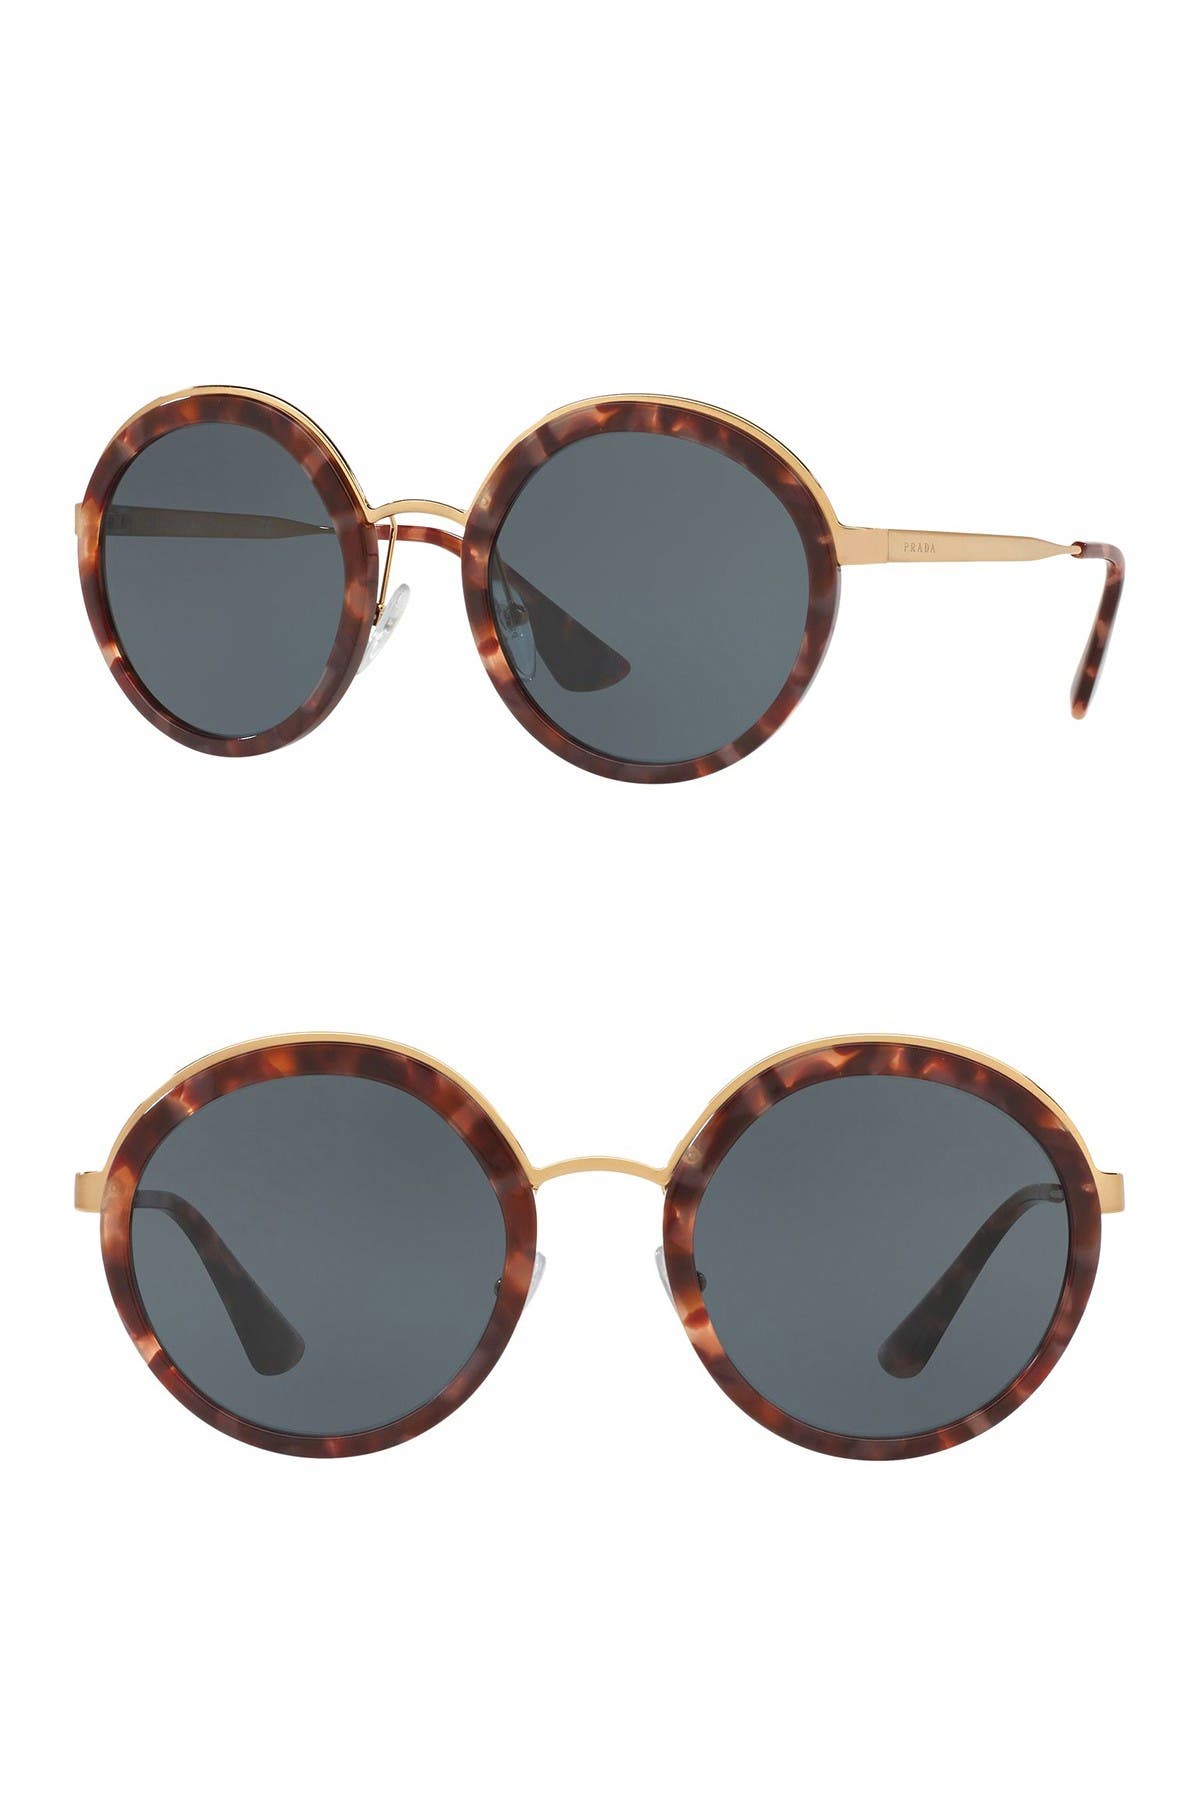 prada women's round 54mm sunglasses